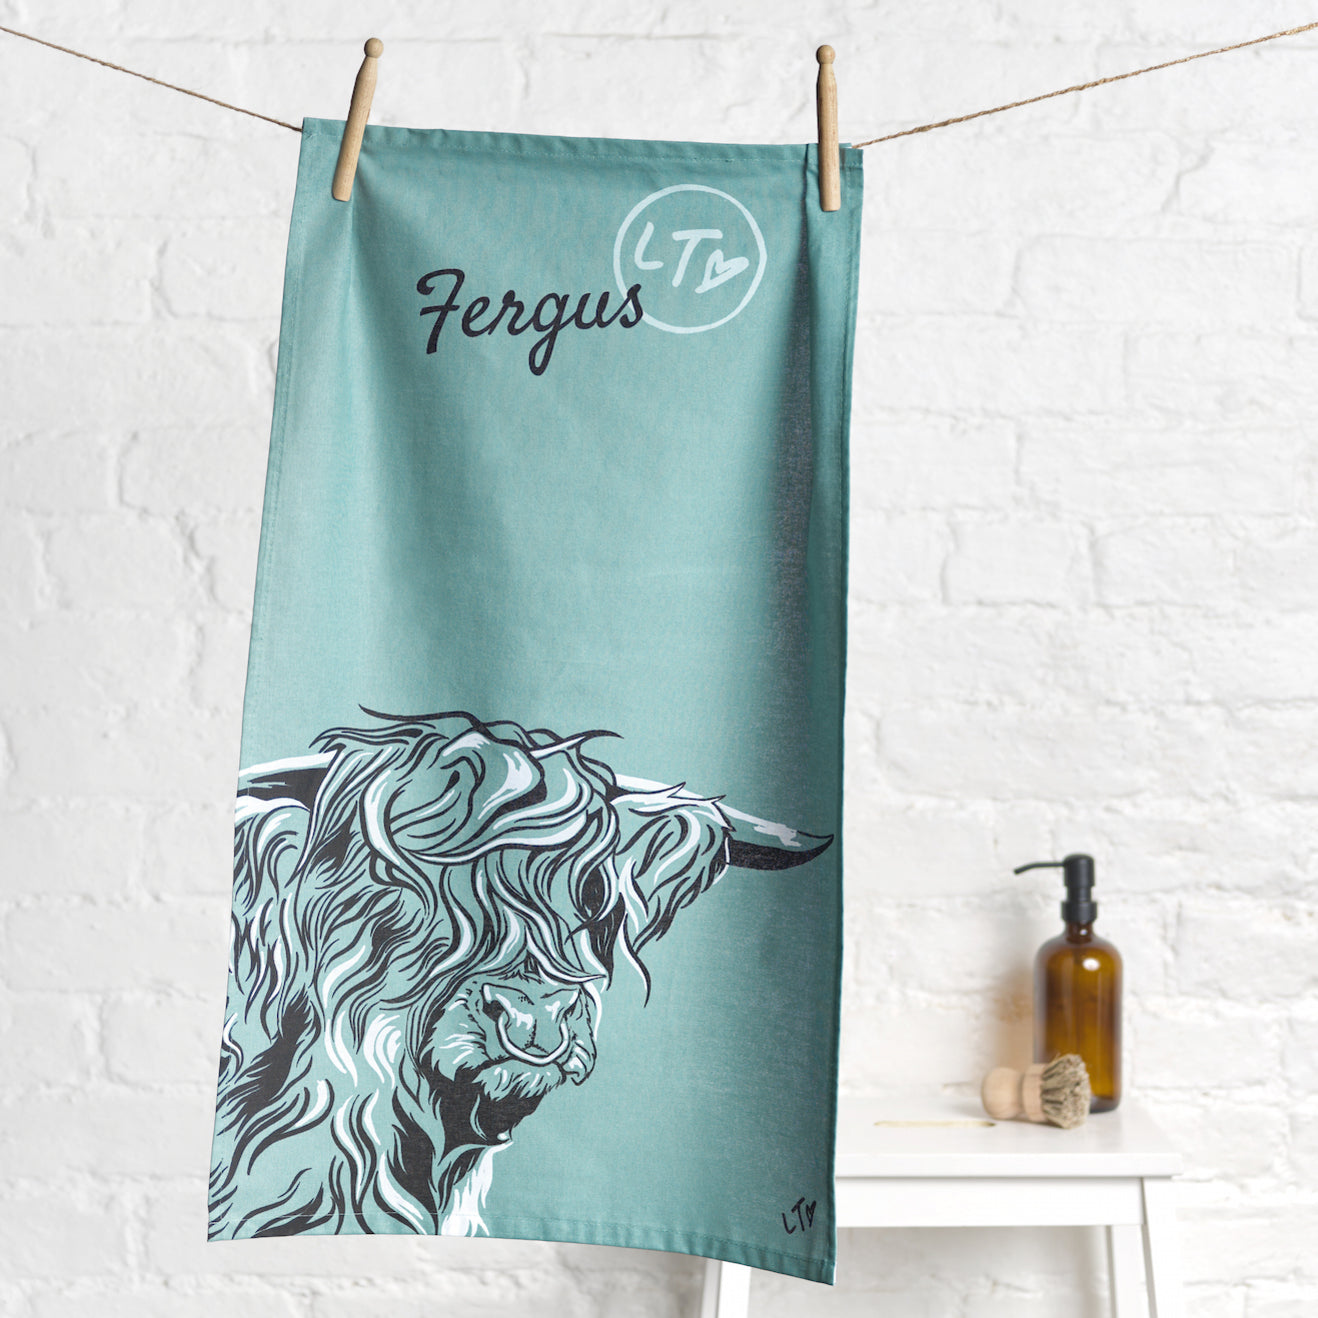 Lauren's Cows "Fergus" Tea Towel